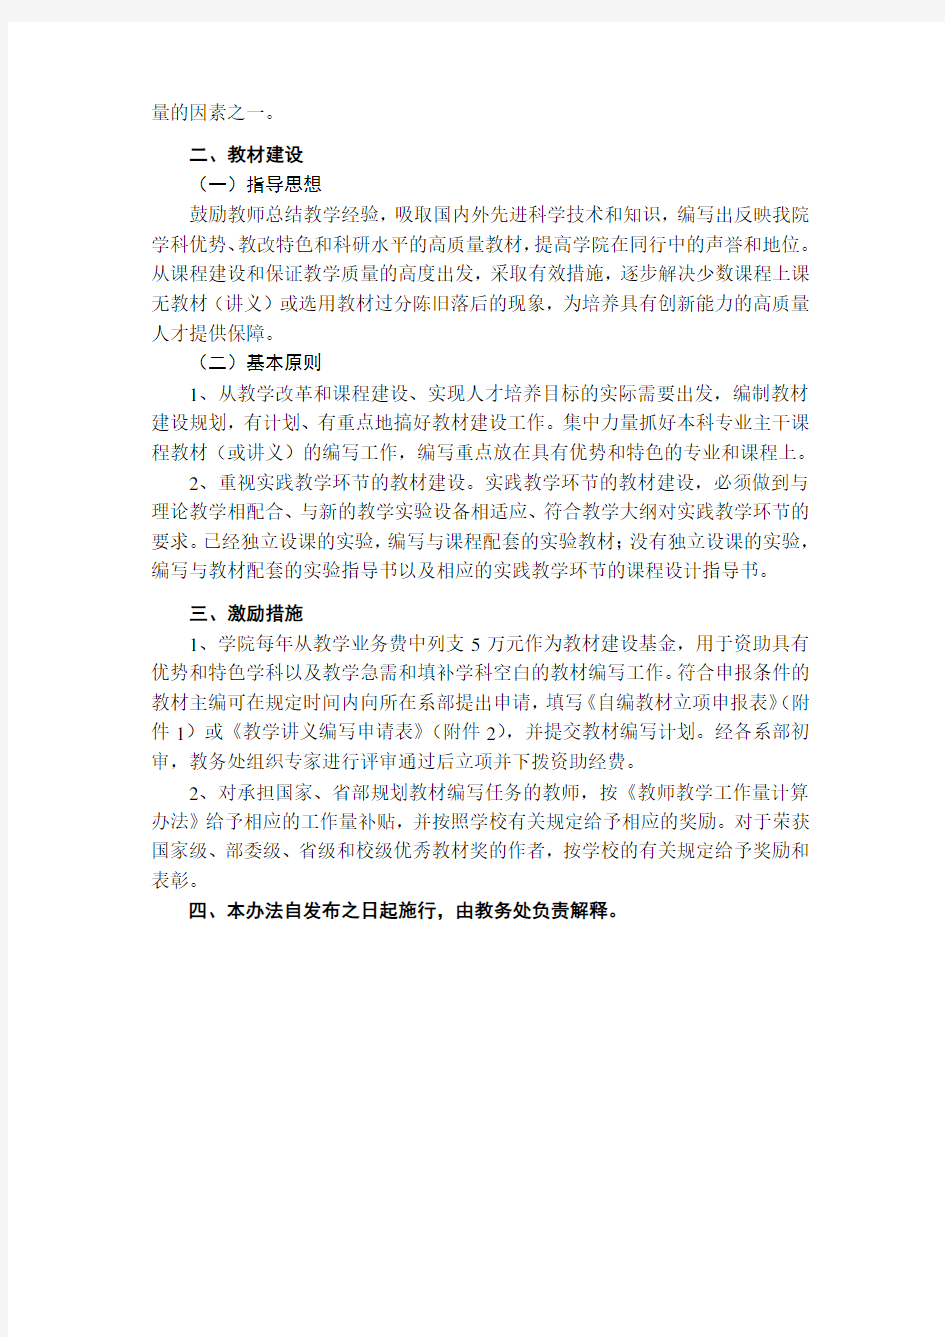 南京农业大学工学院教材选用与教材建设管理办法